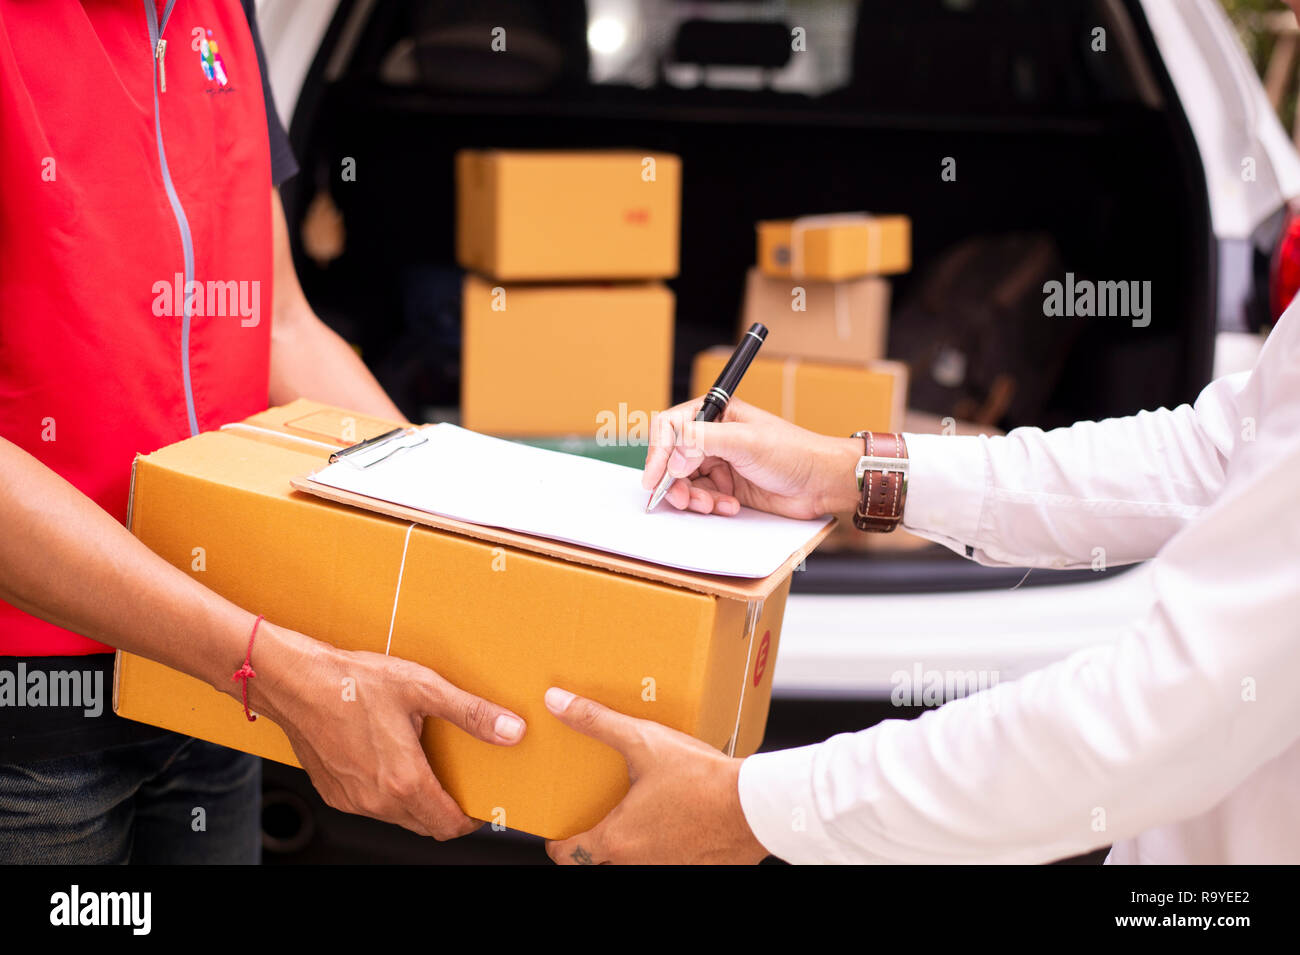 Asiatische junge Mann und Lieferung Arbeiter sind Signatur von Dokumenten für Pakete versenden, Kartons im background-image Stockfoto